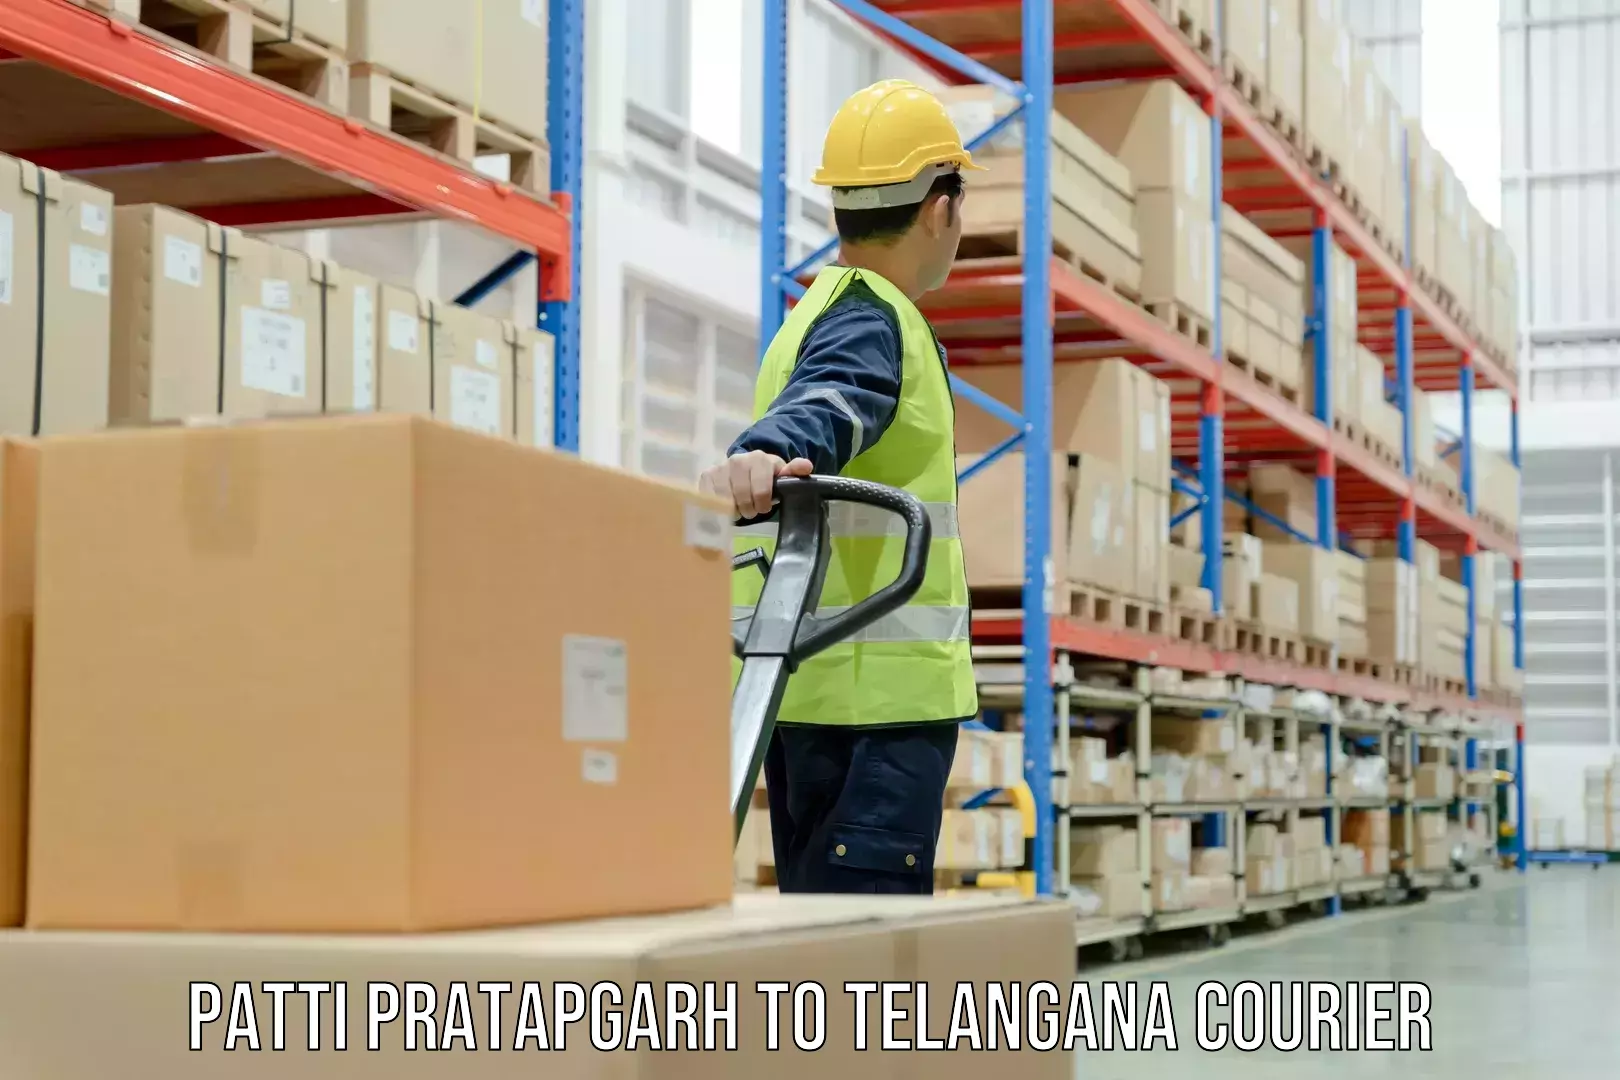 Urgent courier needs Patti Pratapgarh to Vikarabad